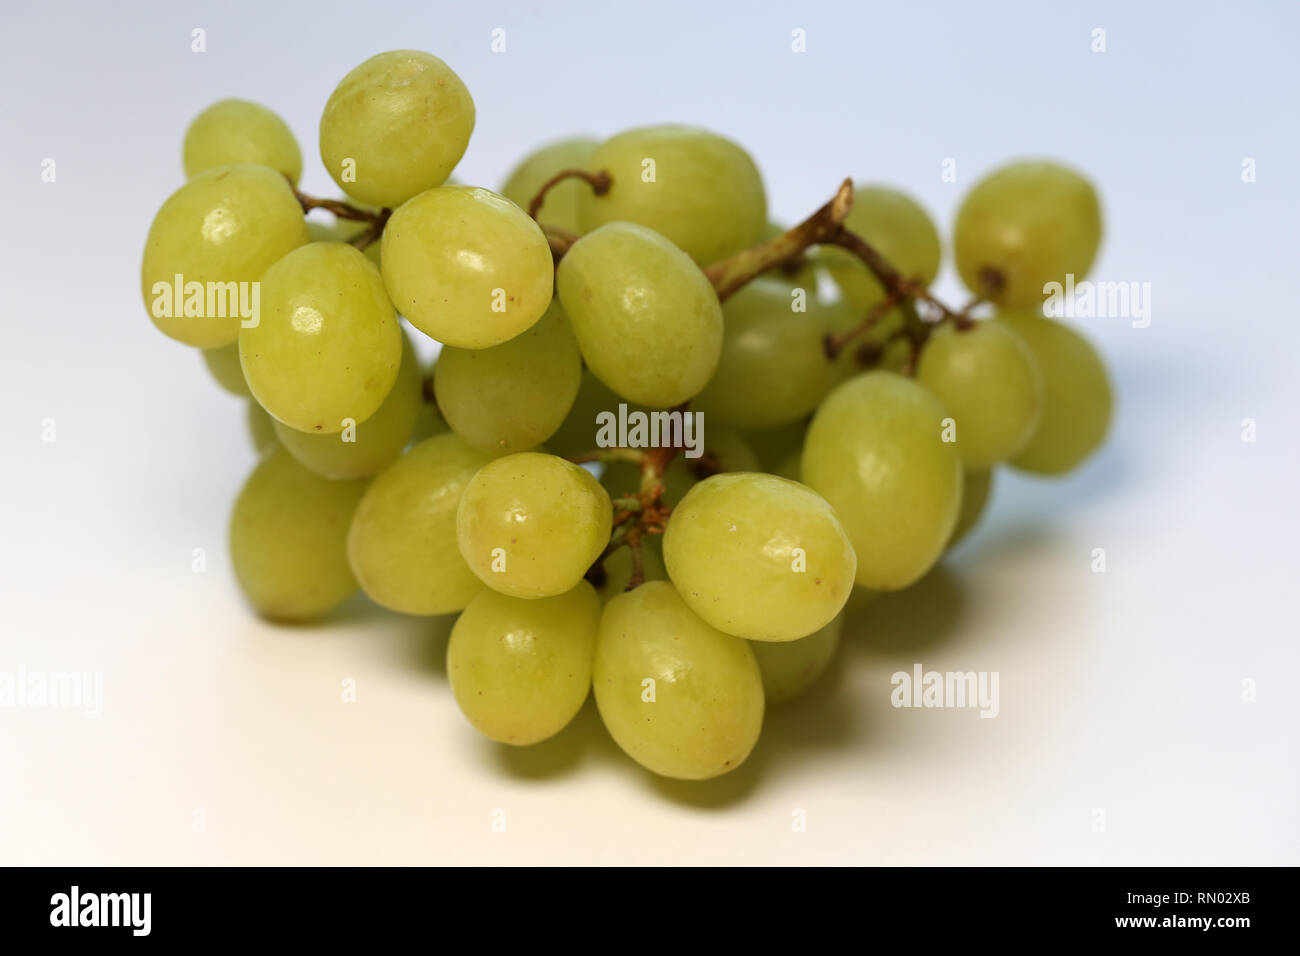 Mature e succose uve verde fotografato su una tabella. Immagine a colori di una sana e deliziosa uva. Closeup prese con un obiettivo macro. Foto Stock